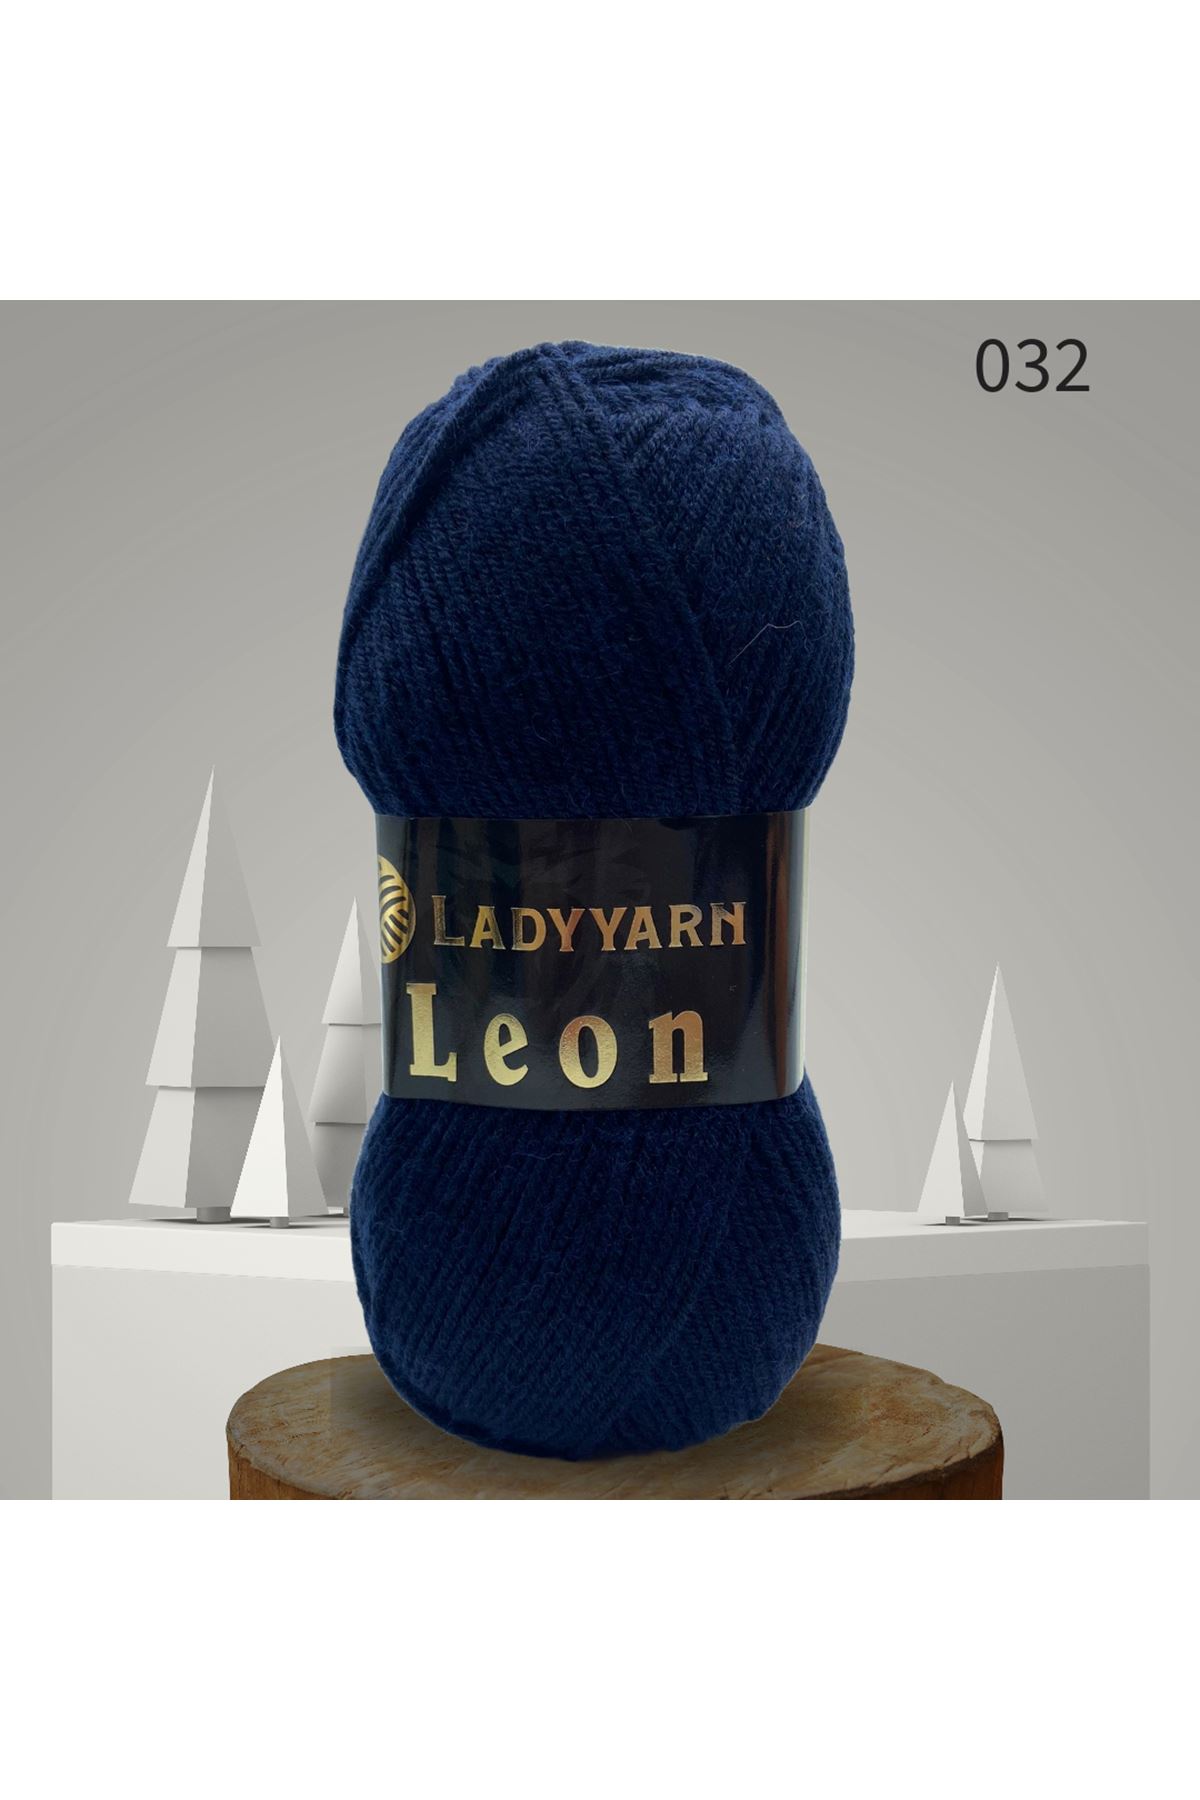 Lady Yarn Leon %49 Yünlü 032 Lacivert